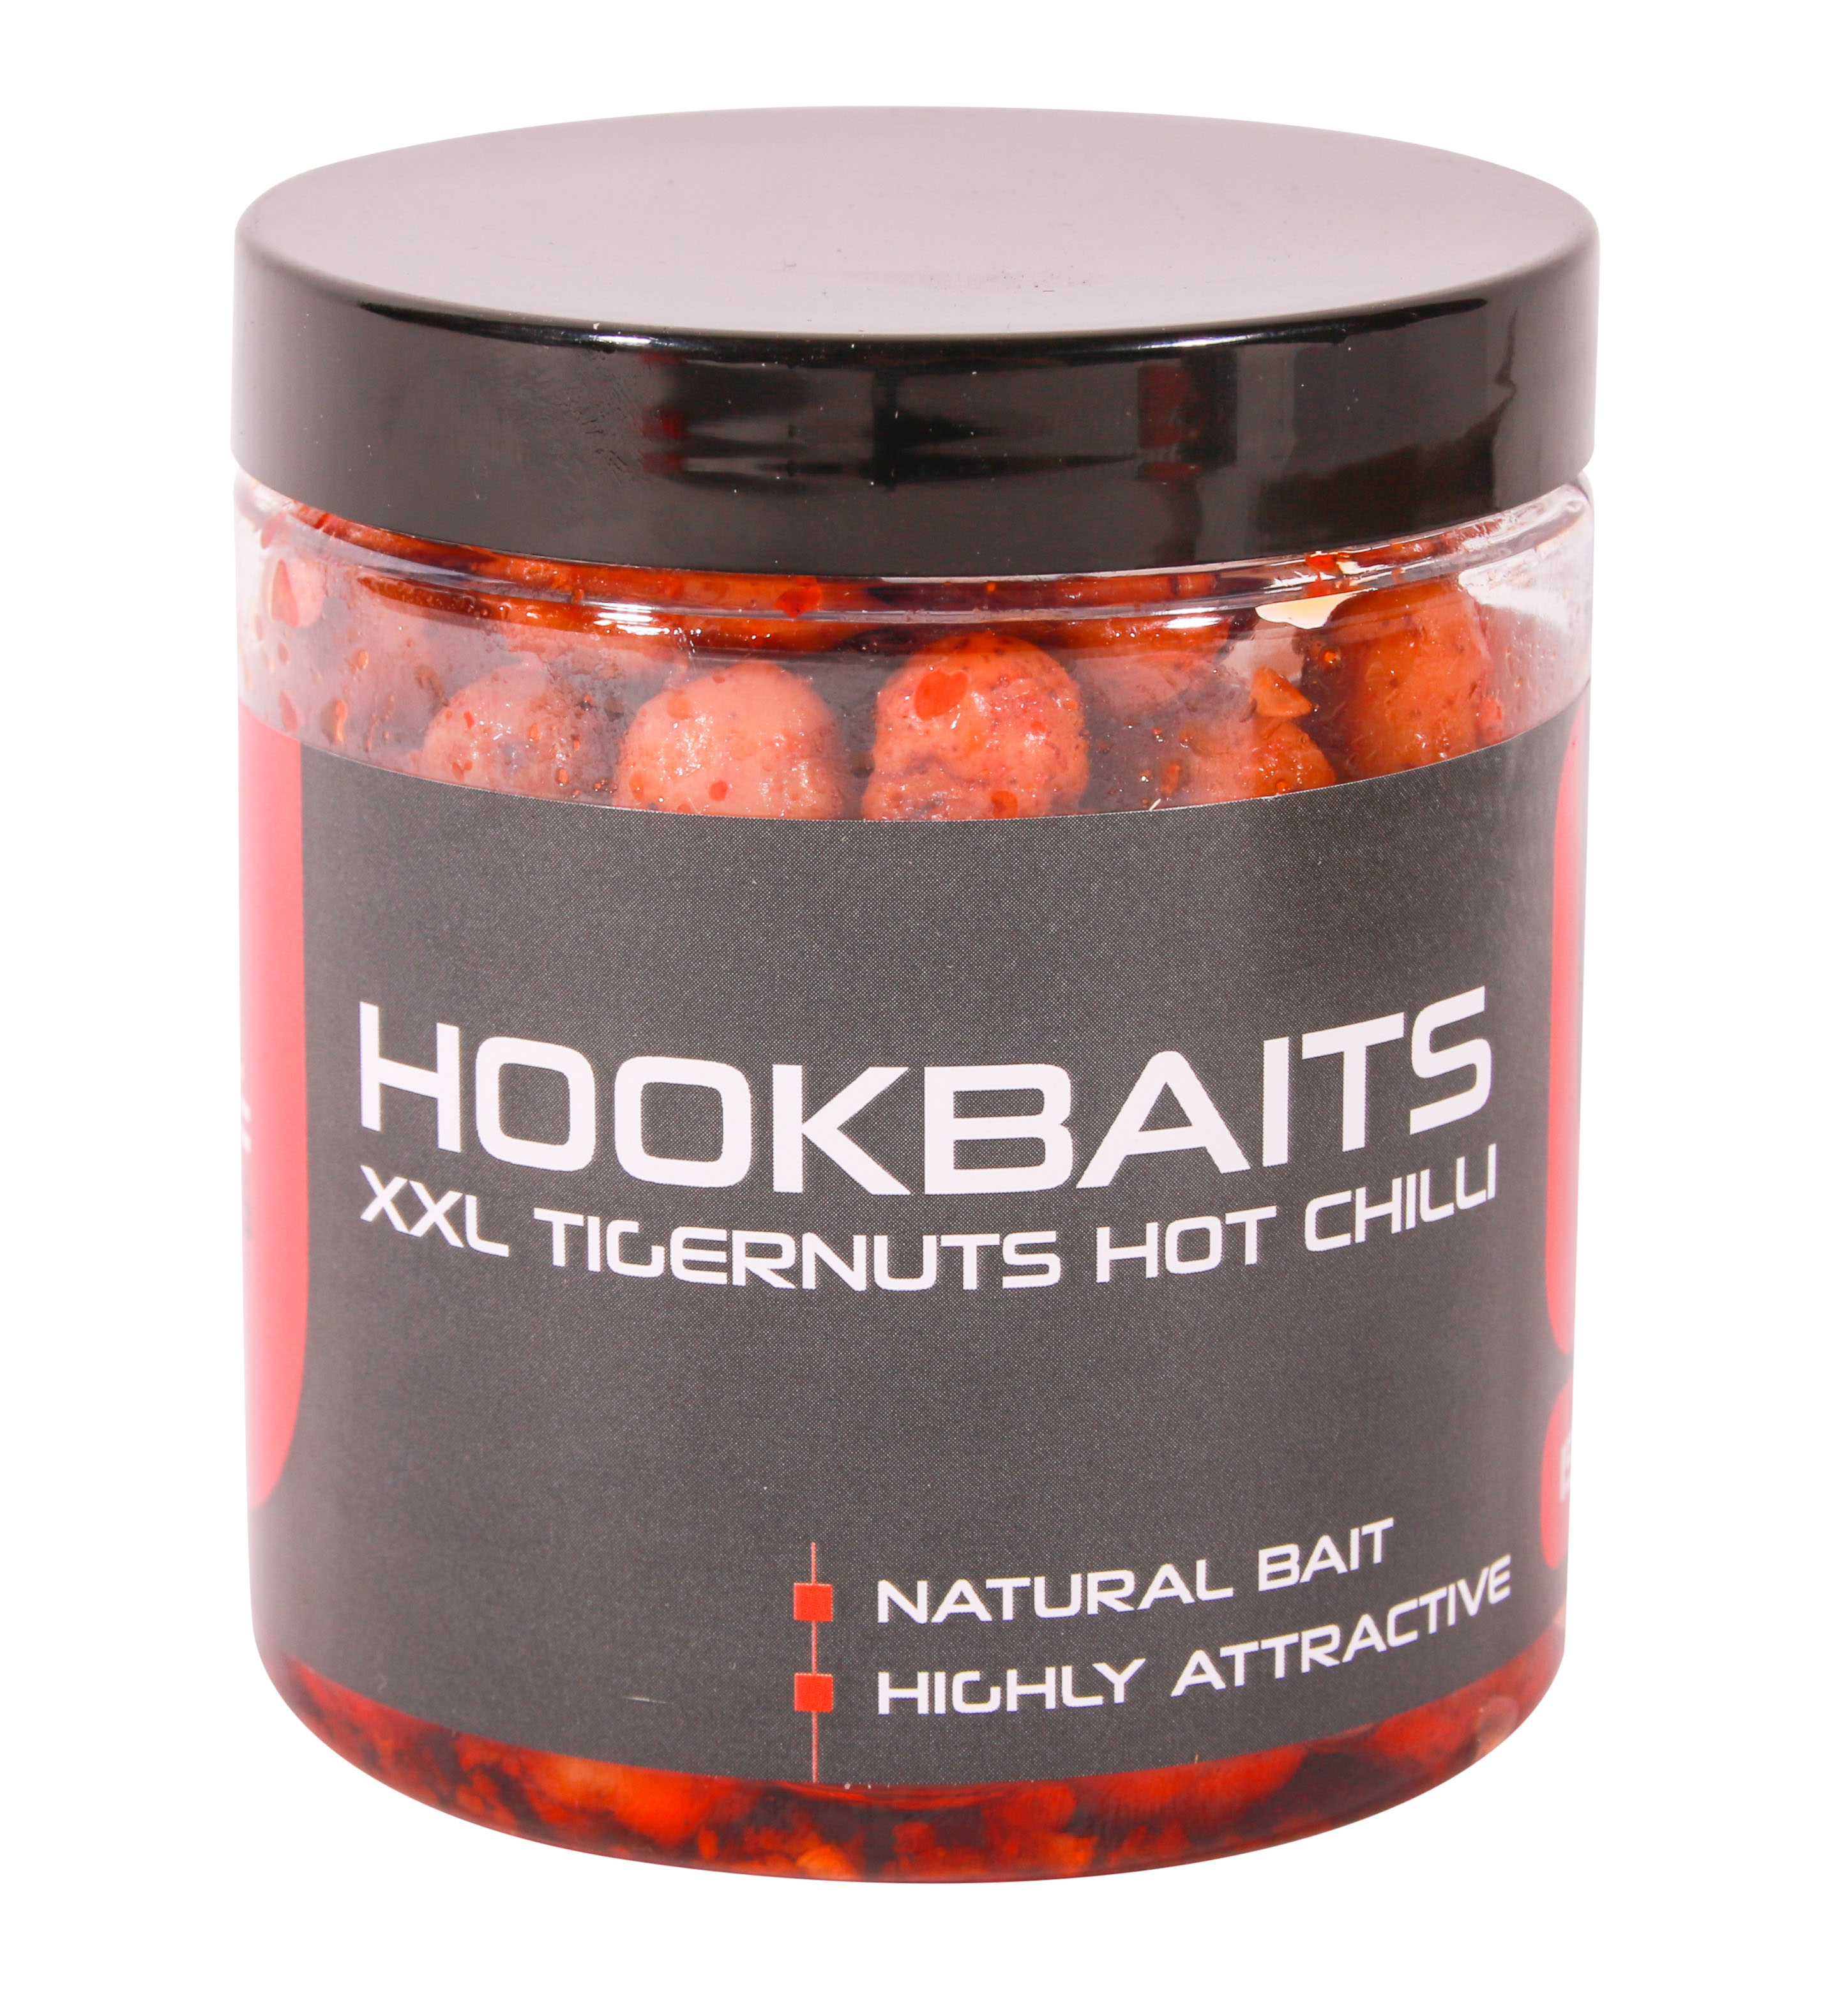 Ultimate Baits Hookbaits - XXL Tigernuts Hot Chilli